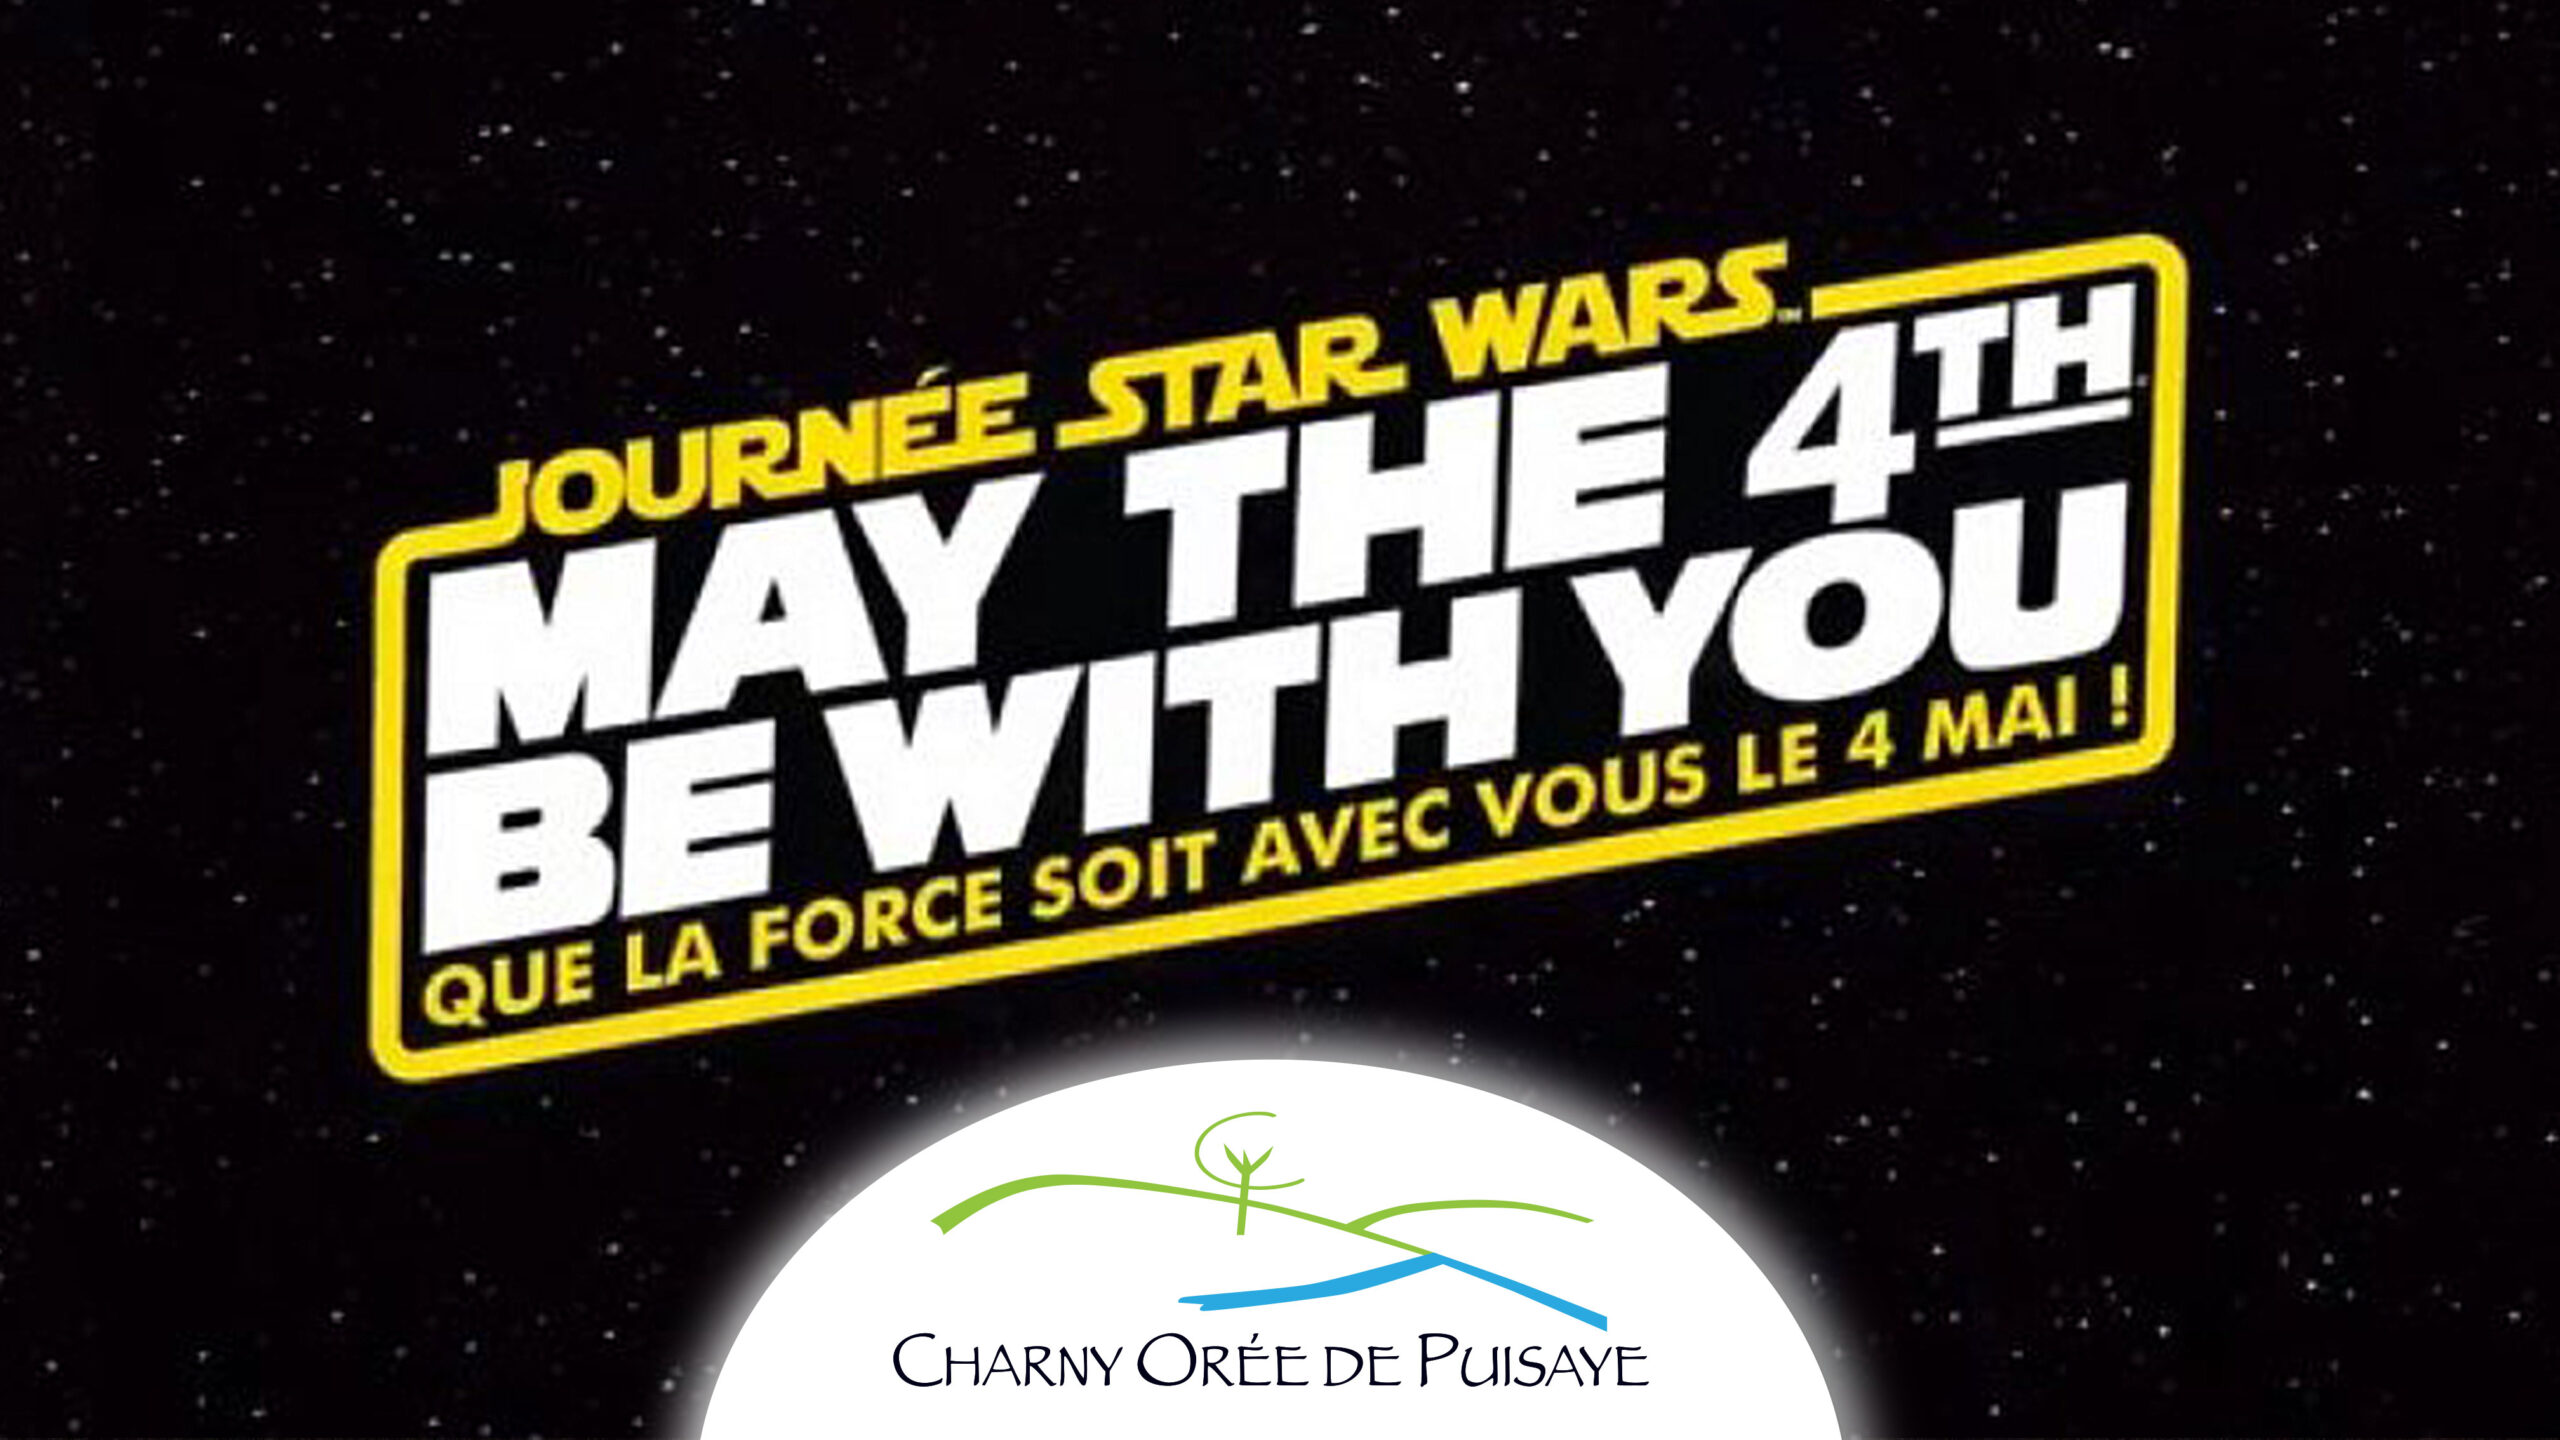 La CCOP fête la journée Star Wars sur Facebook